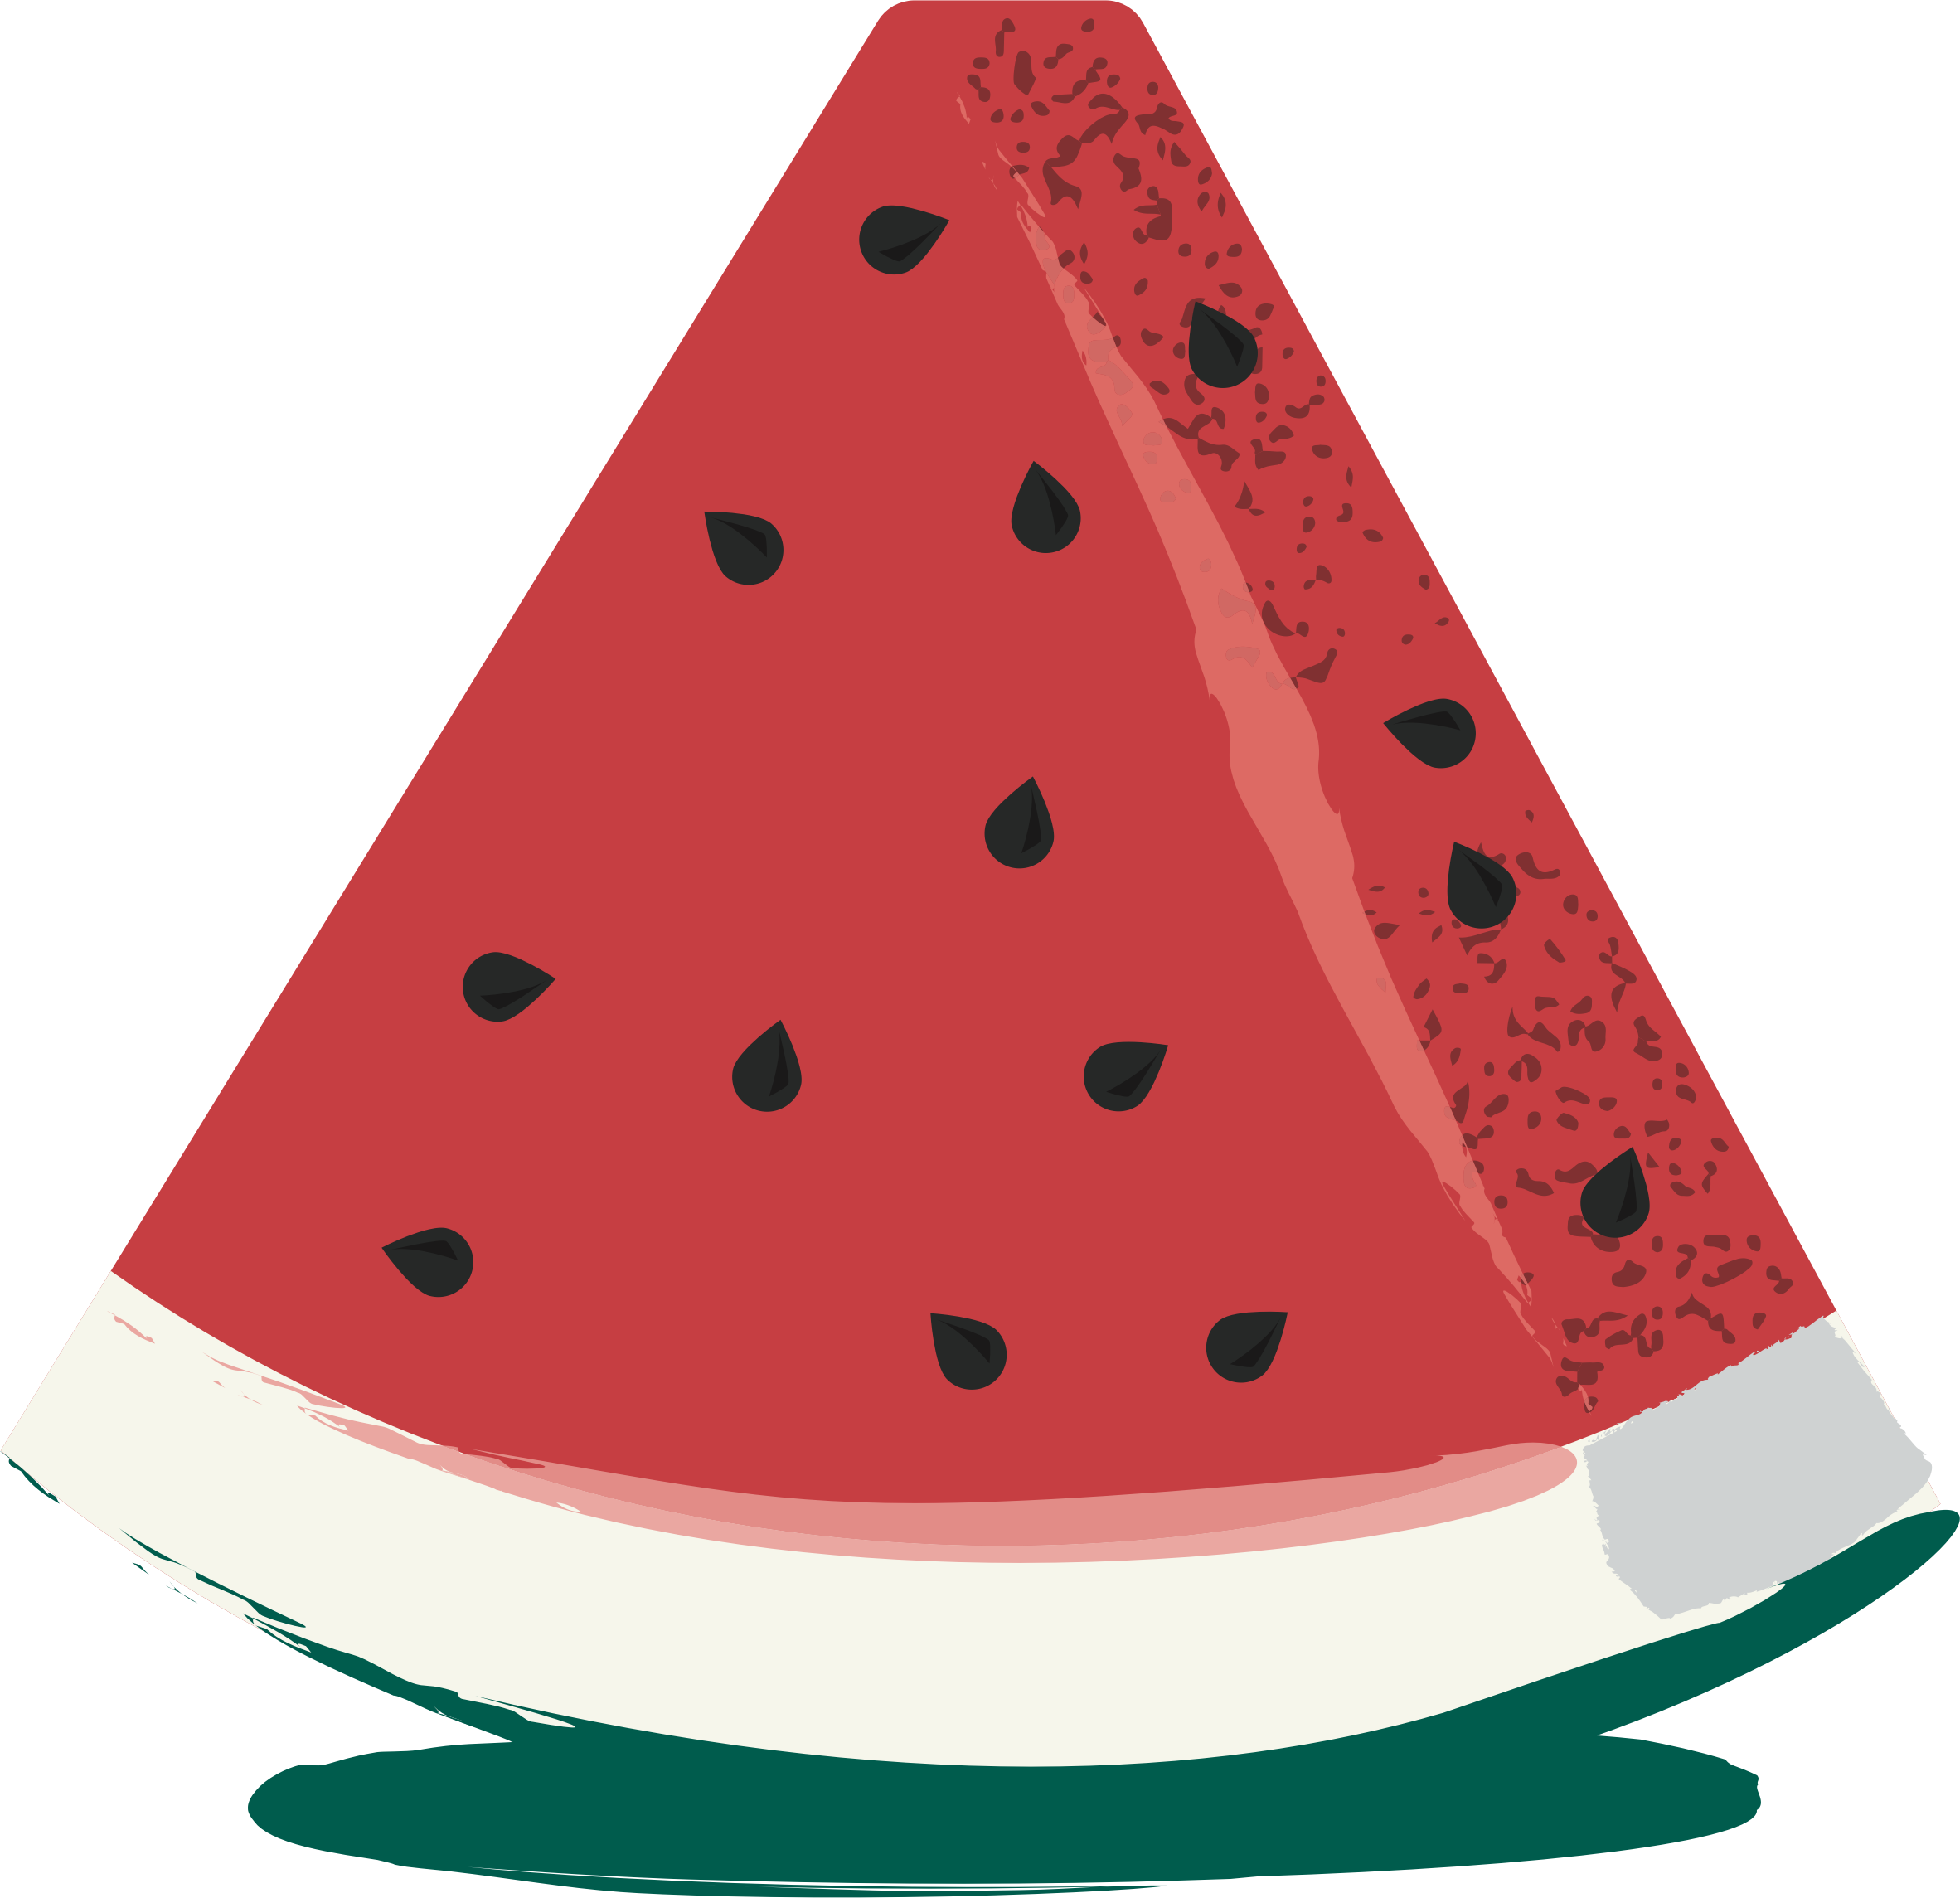 Classy Watermelon Slice Clipart 1 - Watermelon Slice (2364x2289)